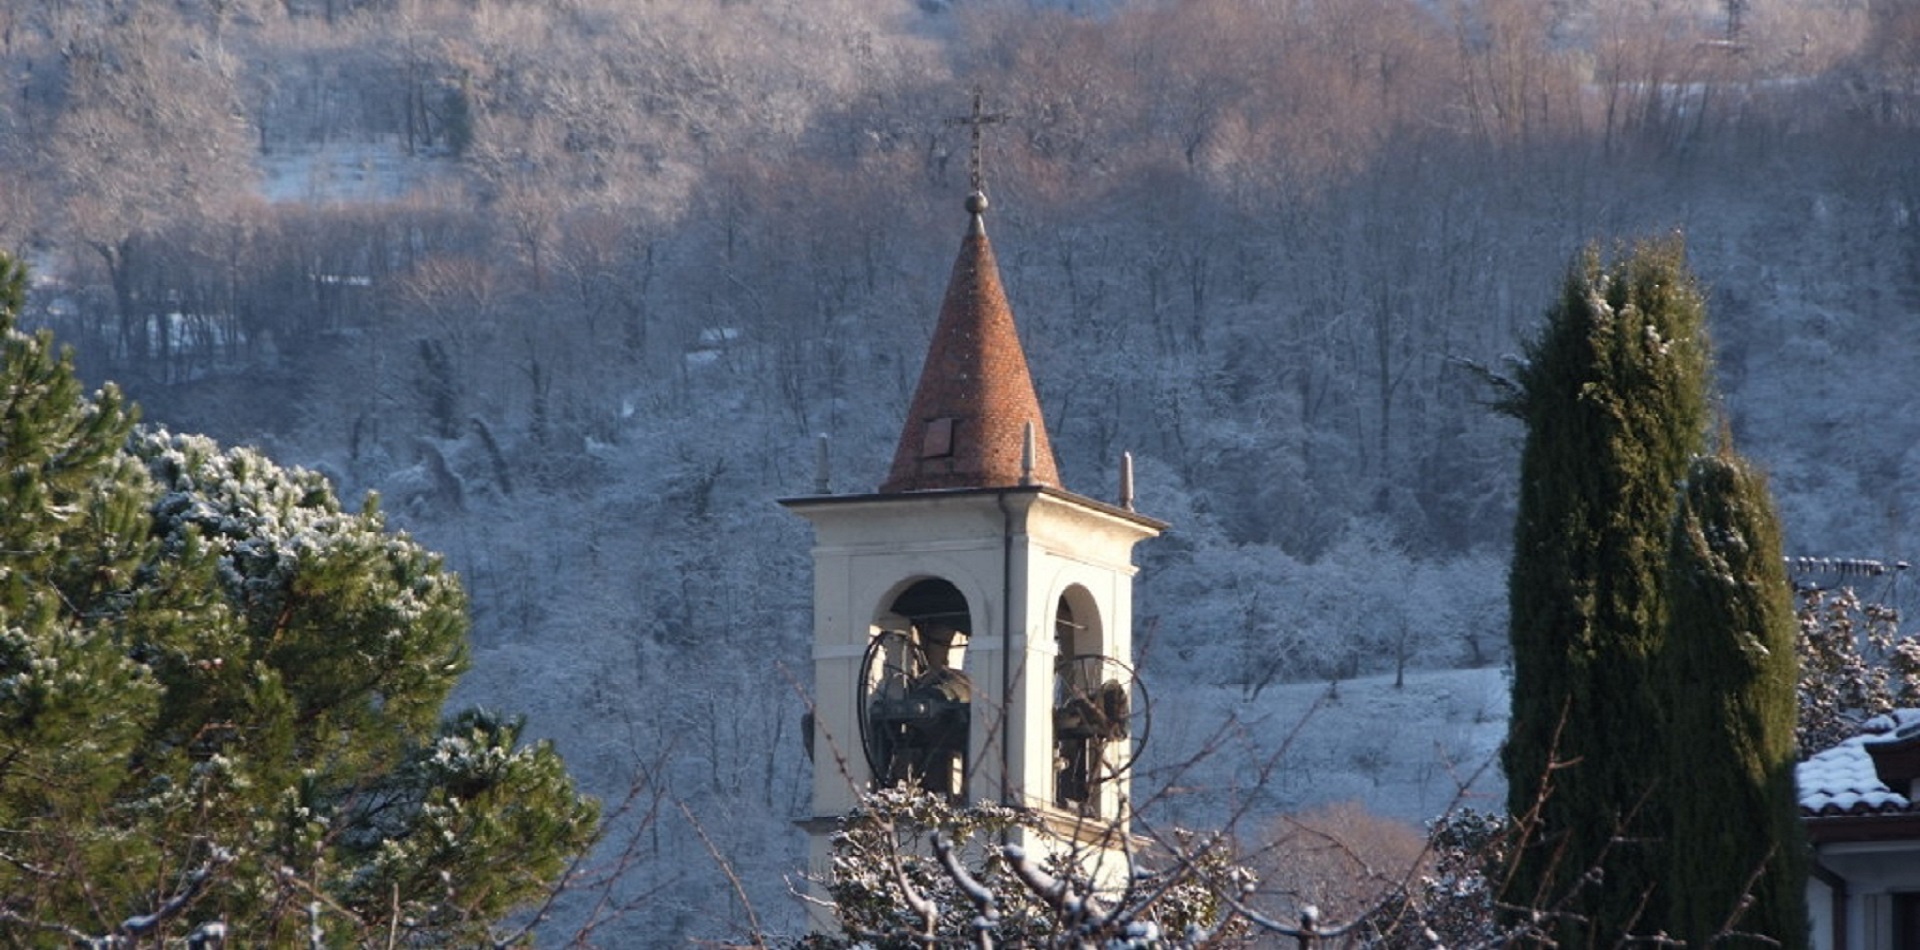 San-Lorenzo-campanile-neve1-prova